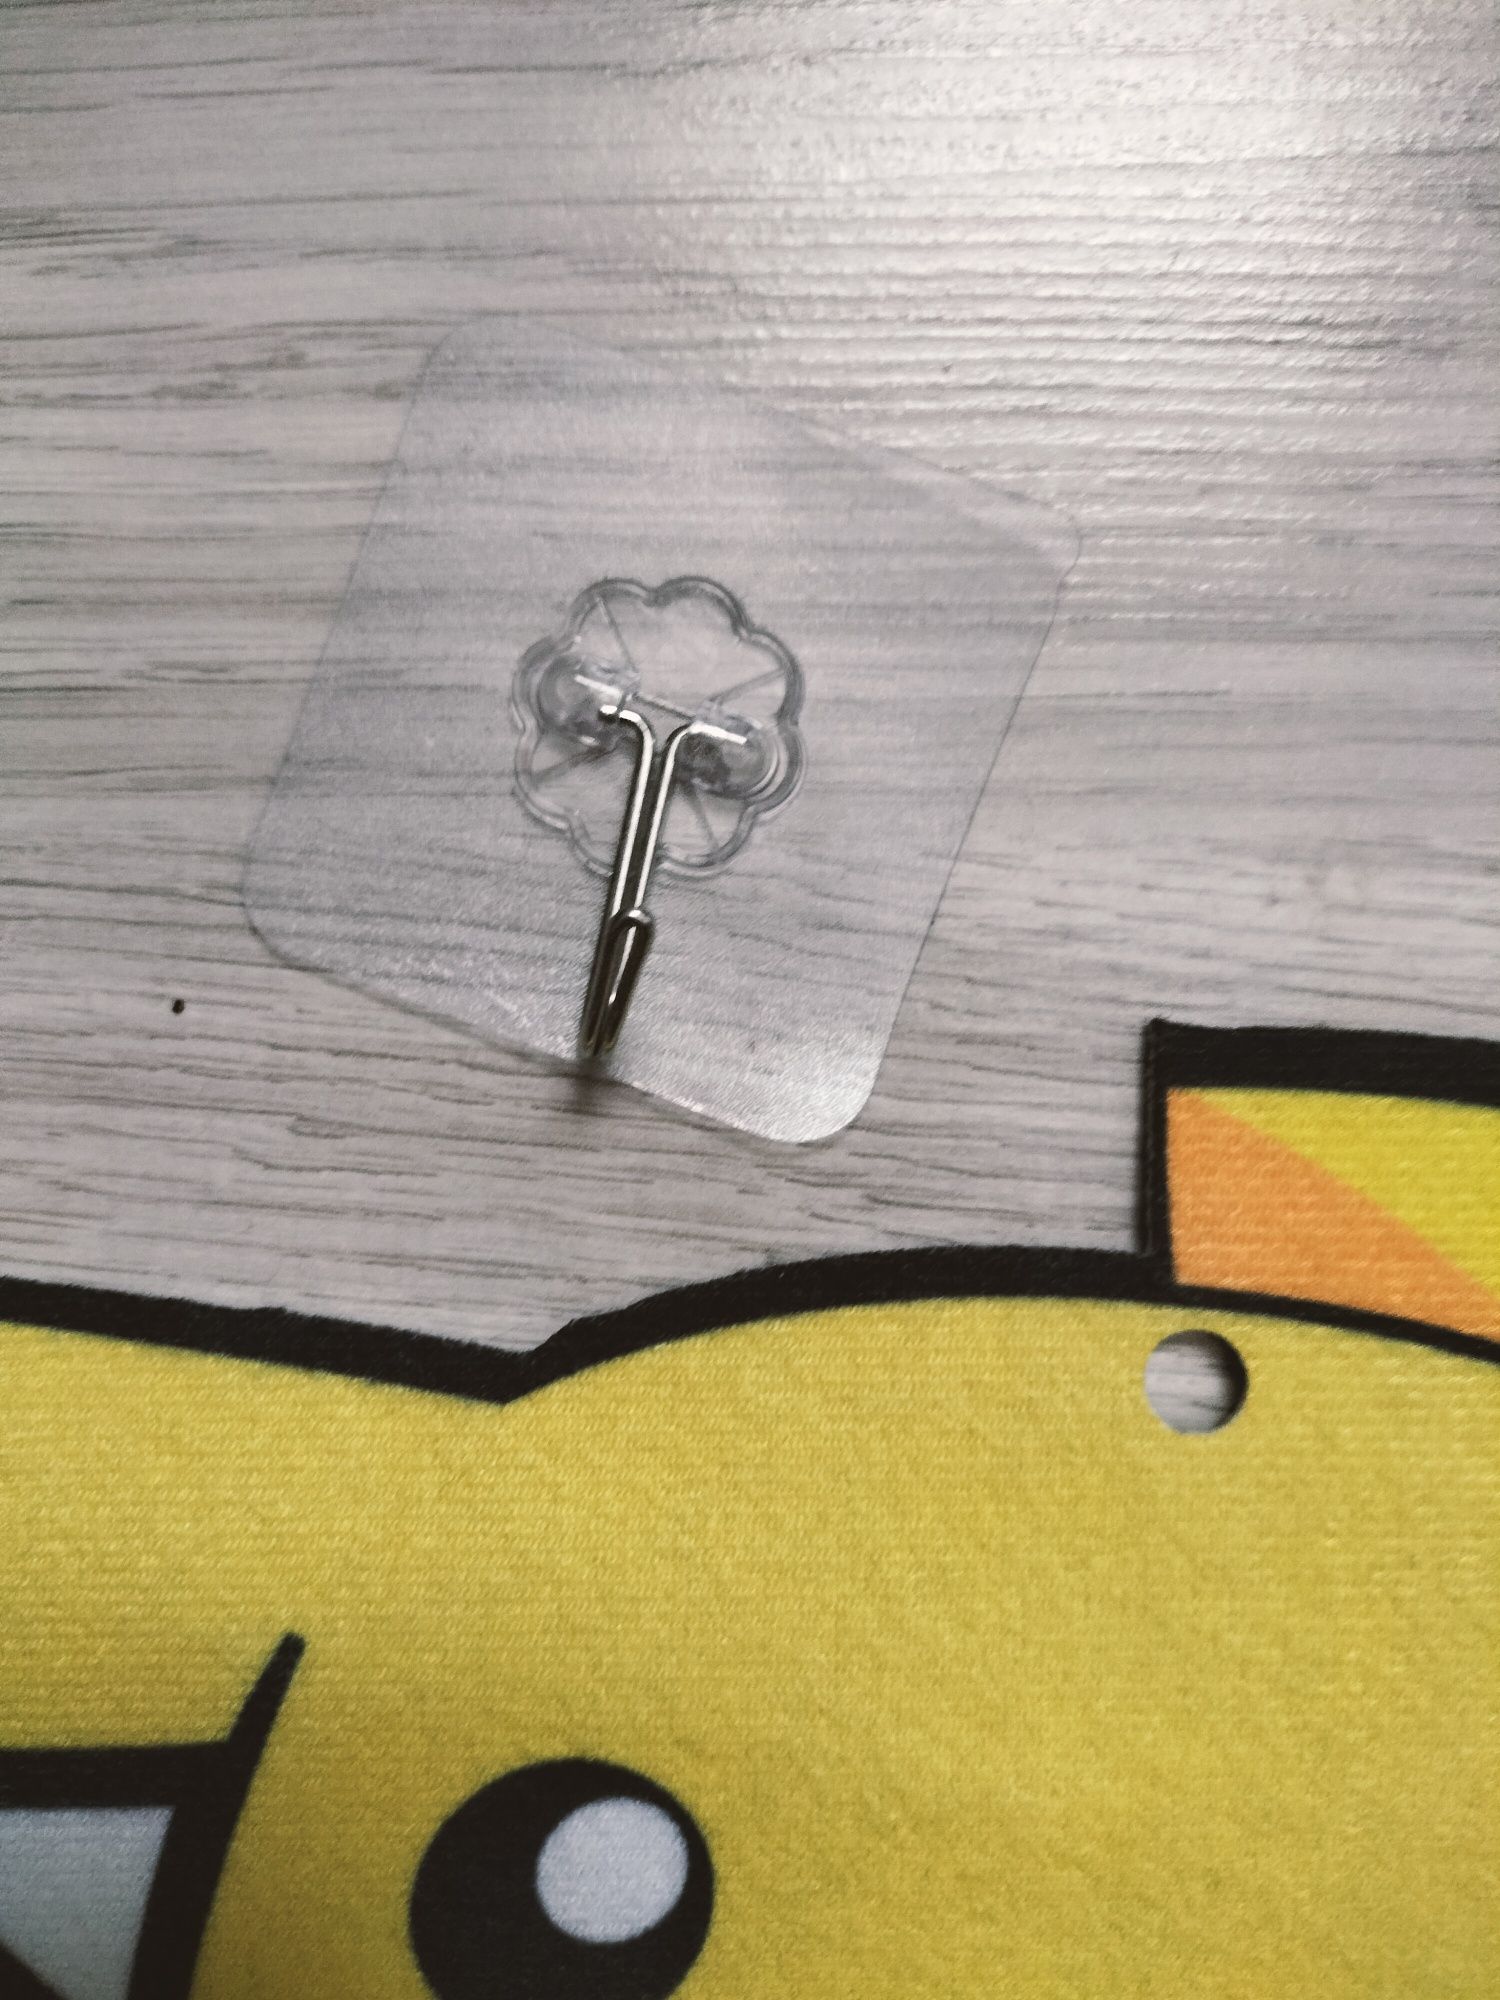 Tablica w kształcie Pikachu z kulkami rzepy do rzucania